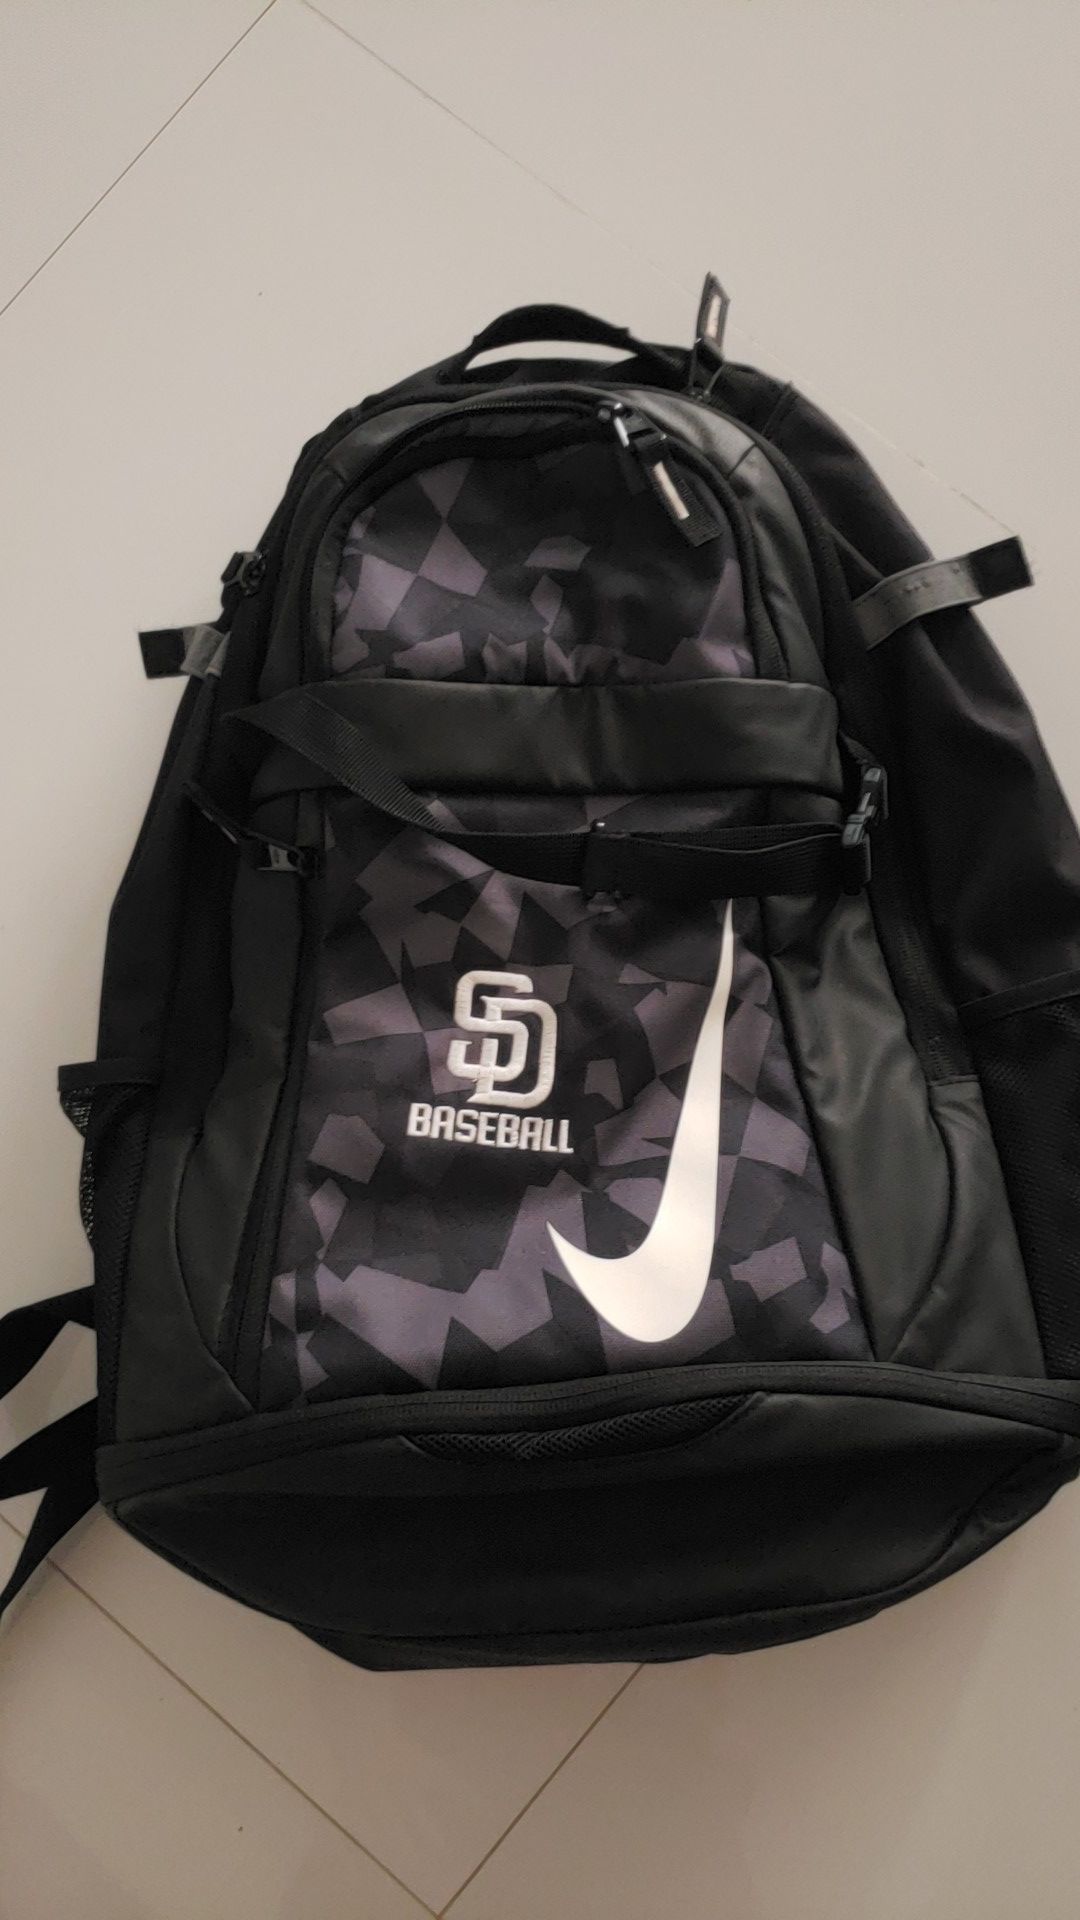 Nike baseball backpack